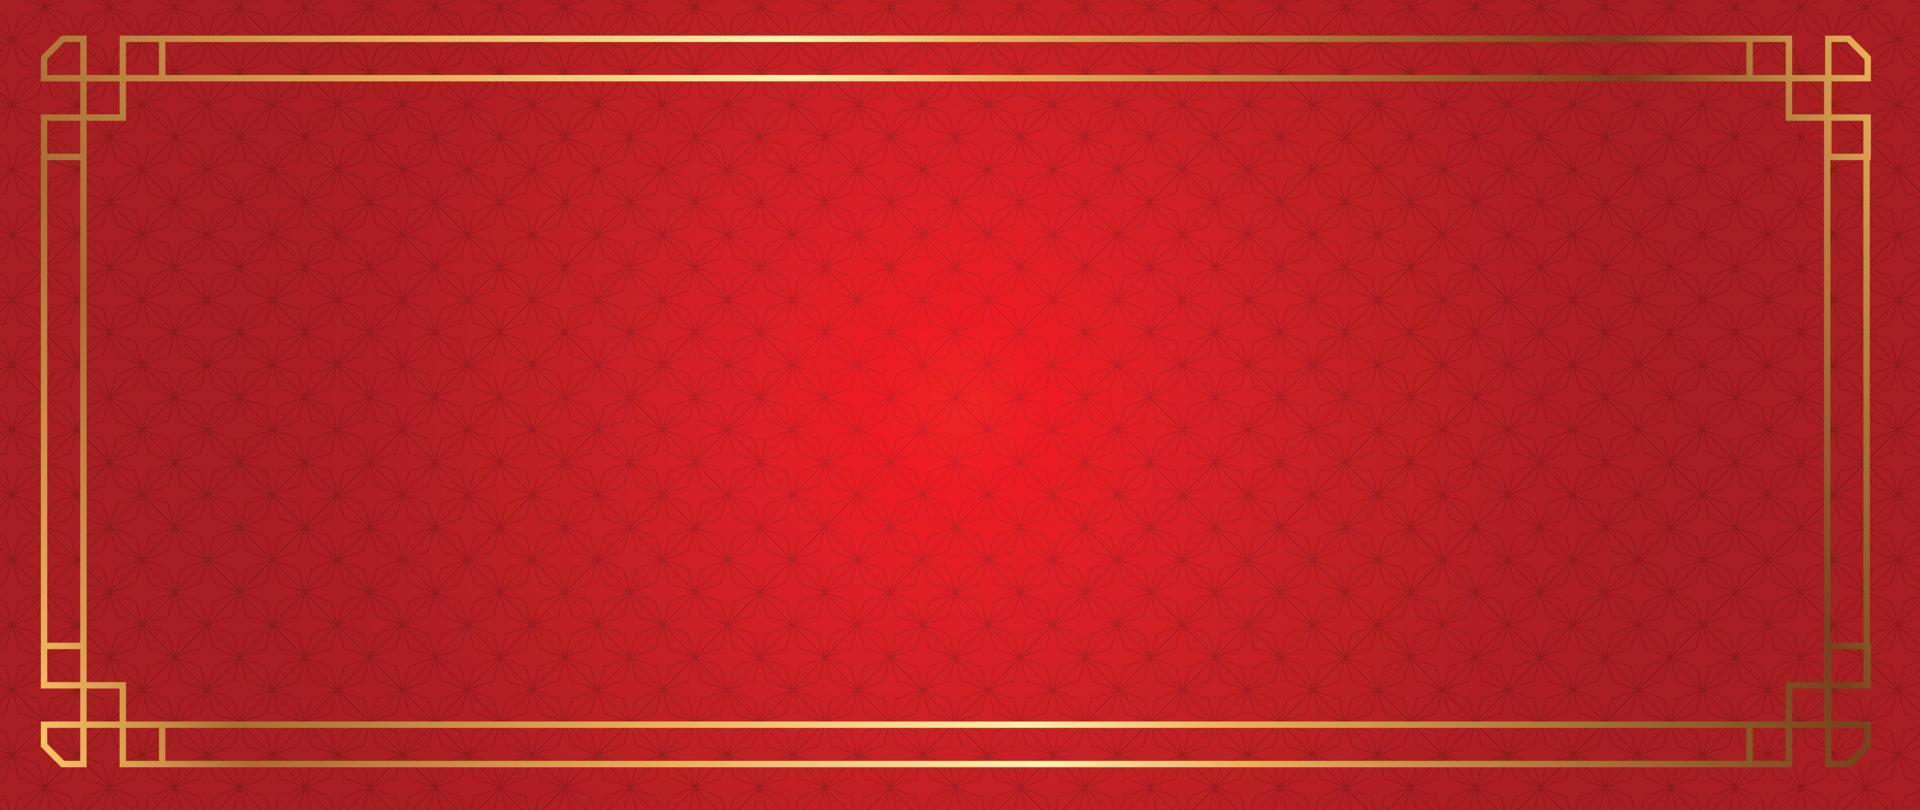 feliz ano novo chinês vetor de fundo vermelho. padrão tradicional chinês e japonês com formas geométricas, moldura dourada. papel de parede estilo oriental para impressão, tecido, capa, banner, decoração.